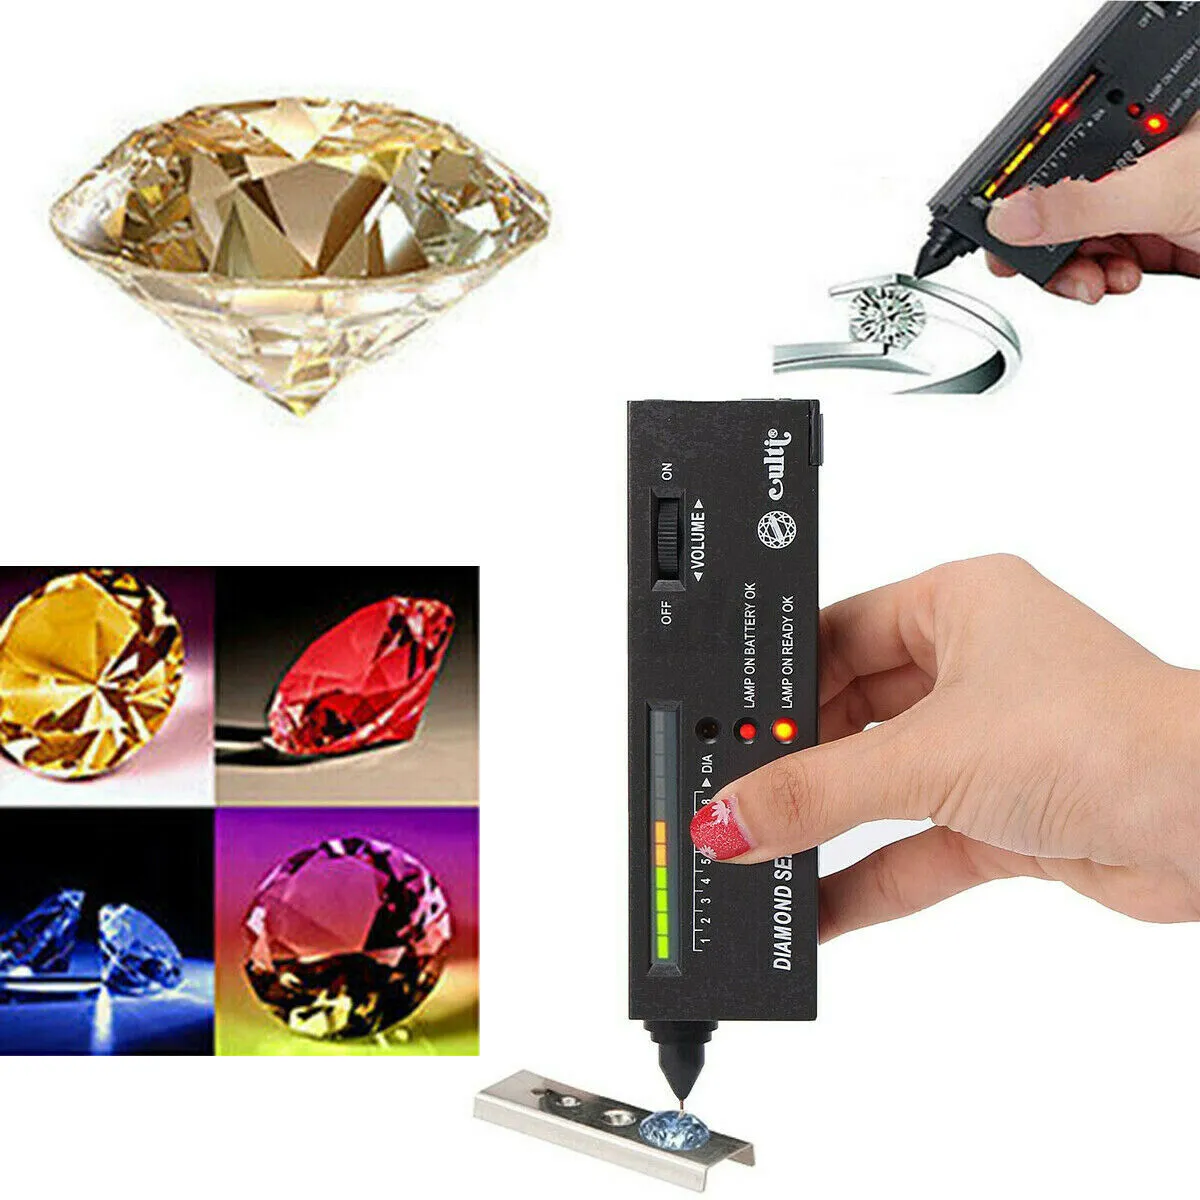 Probador de diamantes profesional de alta precisión portátil Selector de piedras preciosas ll Kit de herramientas de joyero Indicador de diamante LED pluma de prueba